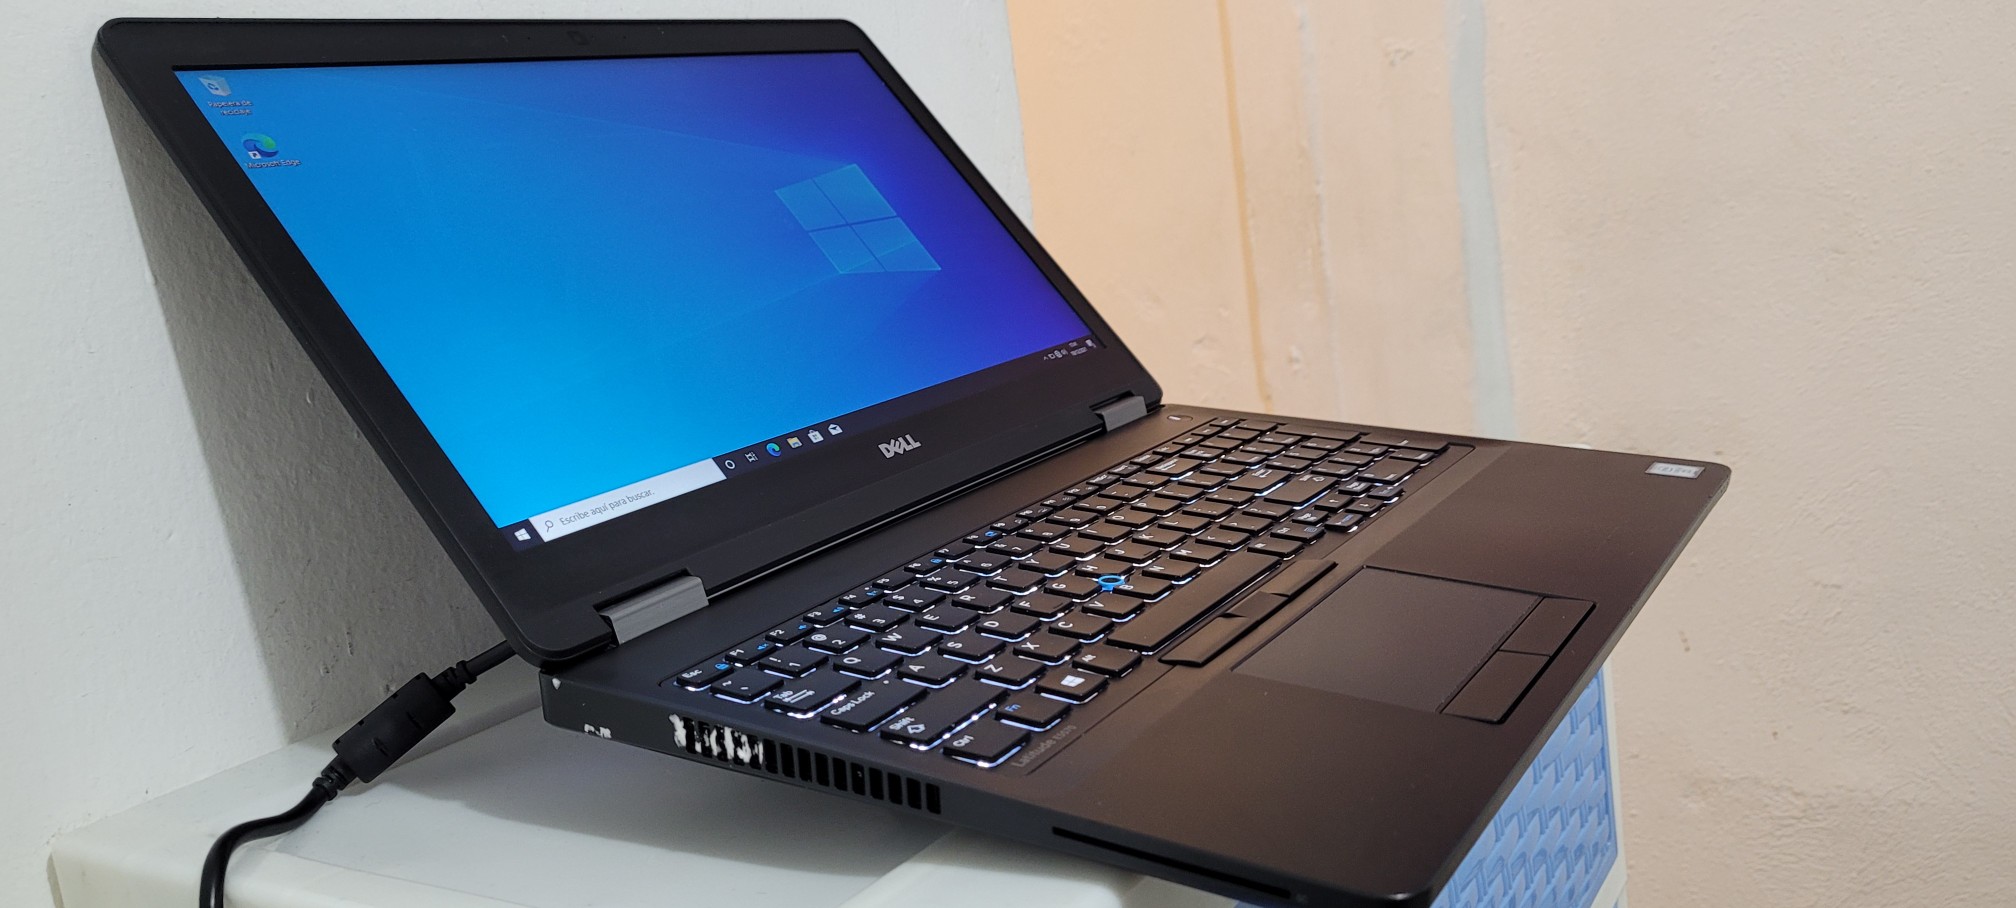 computadoras y laptops - Dell 5570 de 17 Pulg Core i7 Ram 16gb ddr4 SSD 512GB Video Dedicado 2gb 1